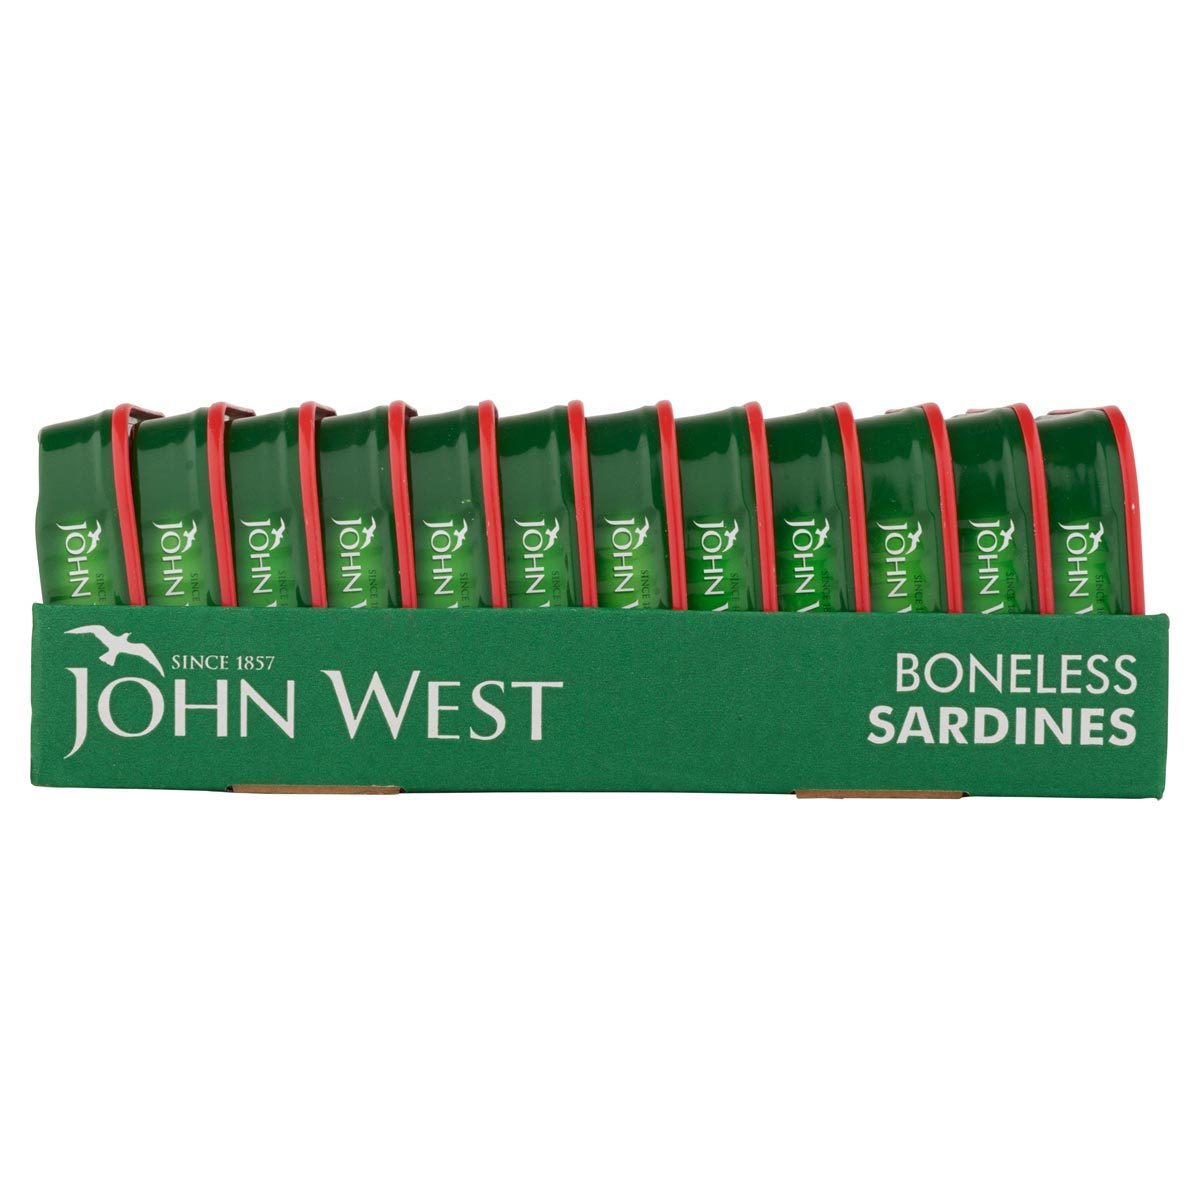 Side on image of tray of 12 x 95g John West Boneless Sardine Tins